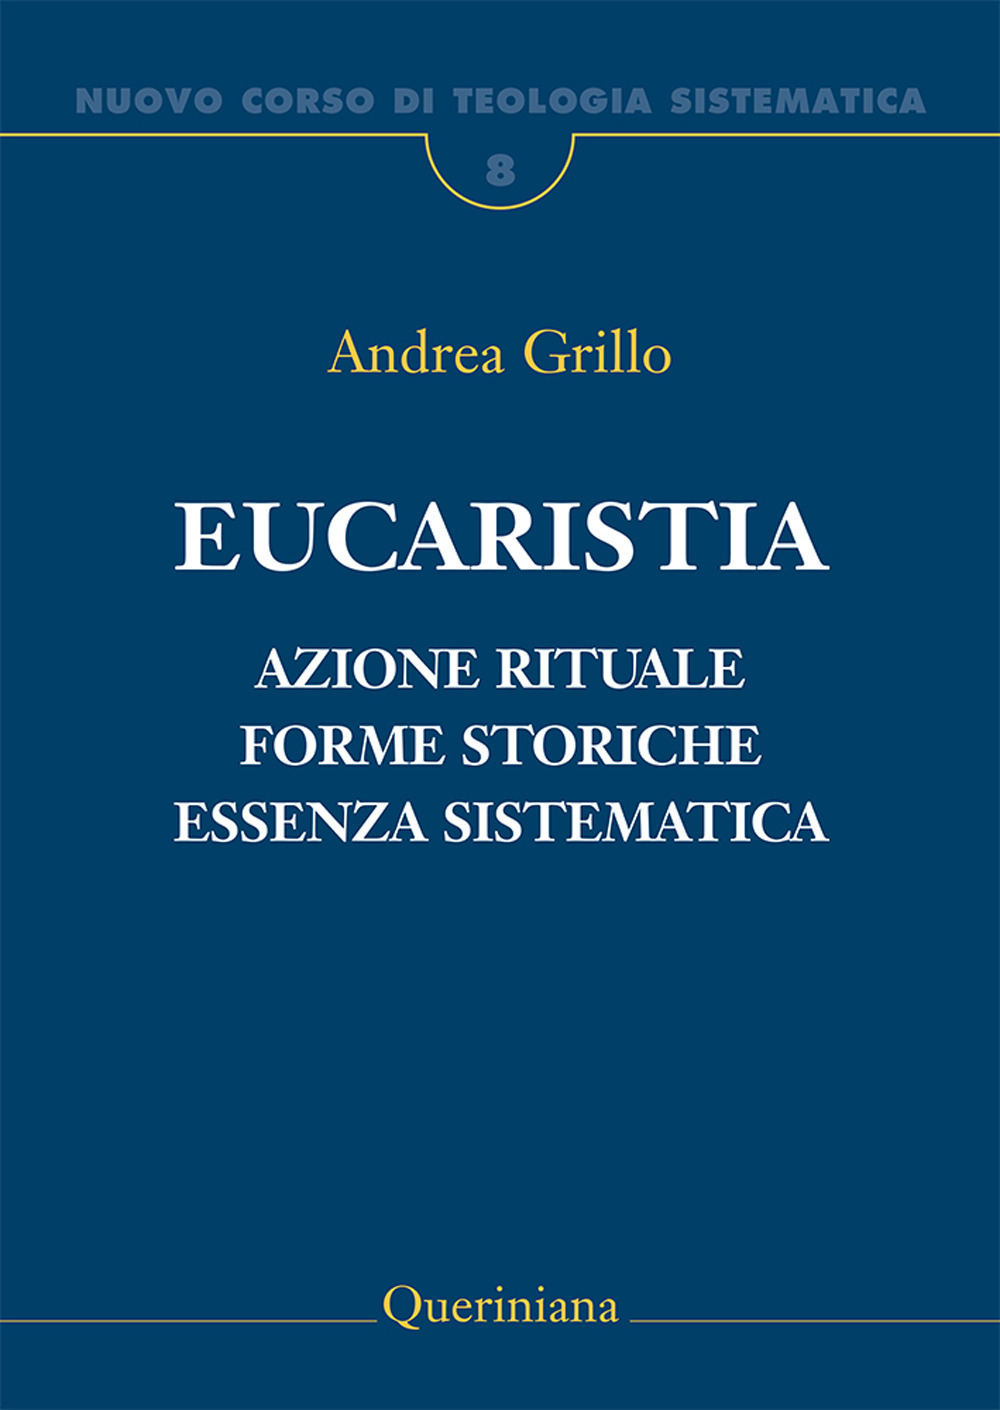 Image of Nuovo corso di teologia sistematica. Vol. 8: Eucaristia. Azione rituale, forme storiche, essenza sistematica.